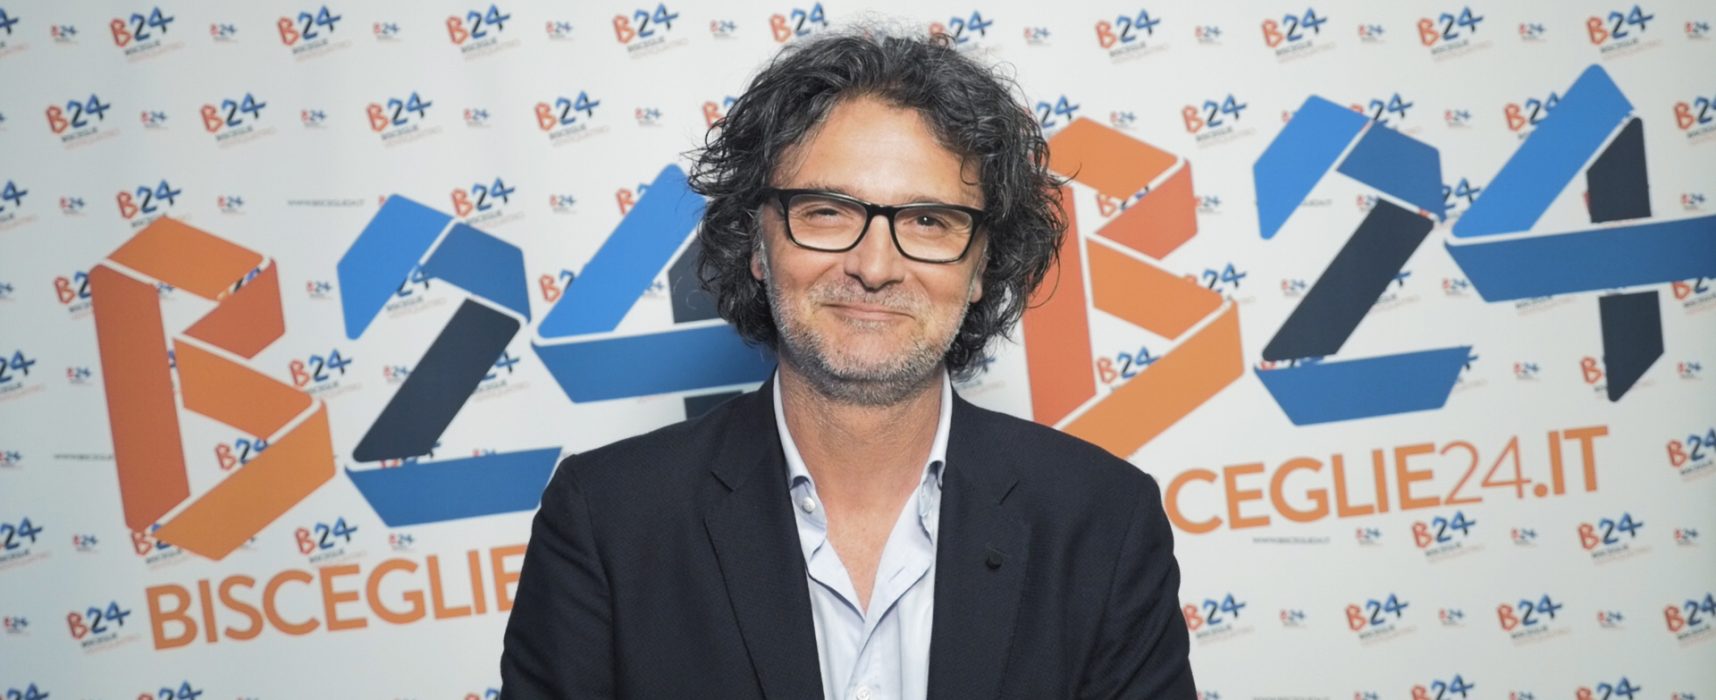 “Consiglieri 24”, la rubrica per conoscere i candidati / Domenico Baldini – VIDEO